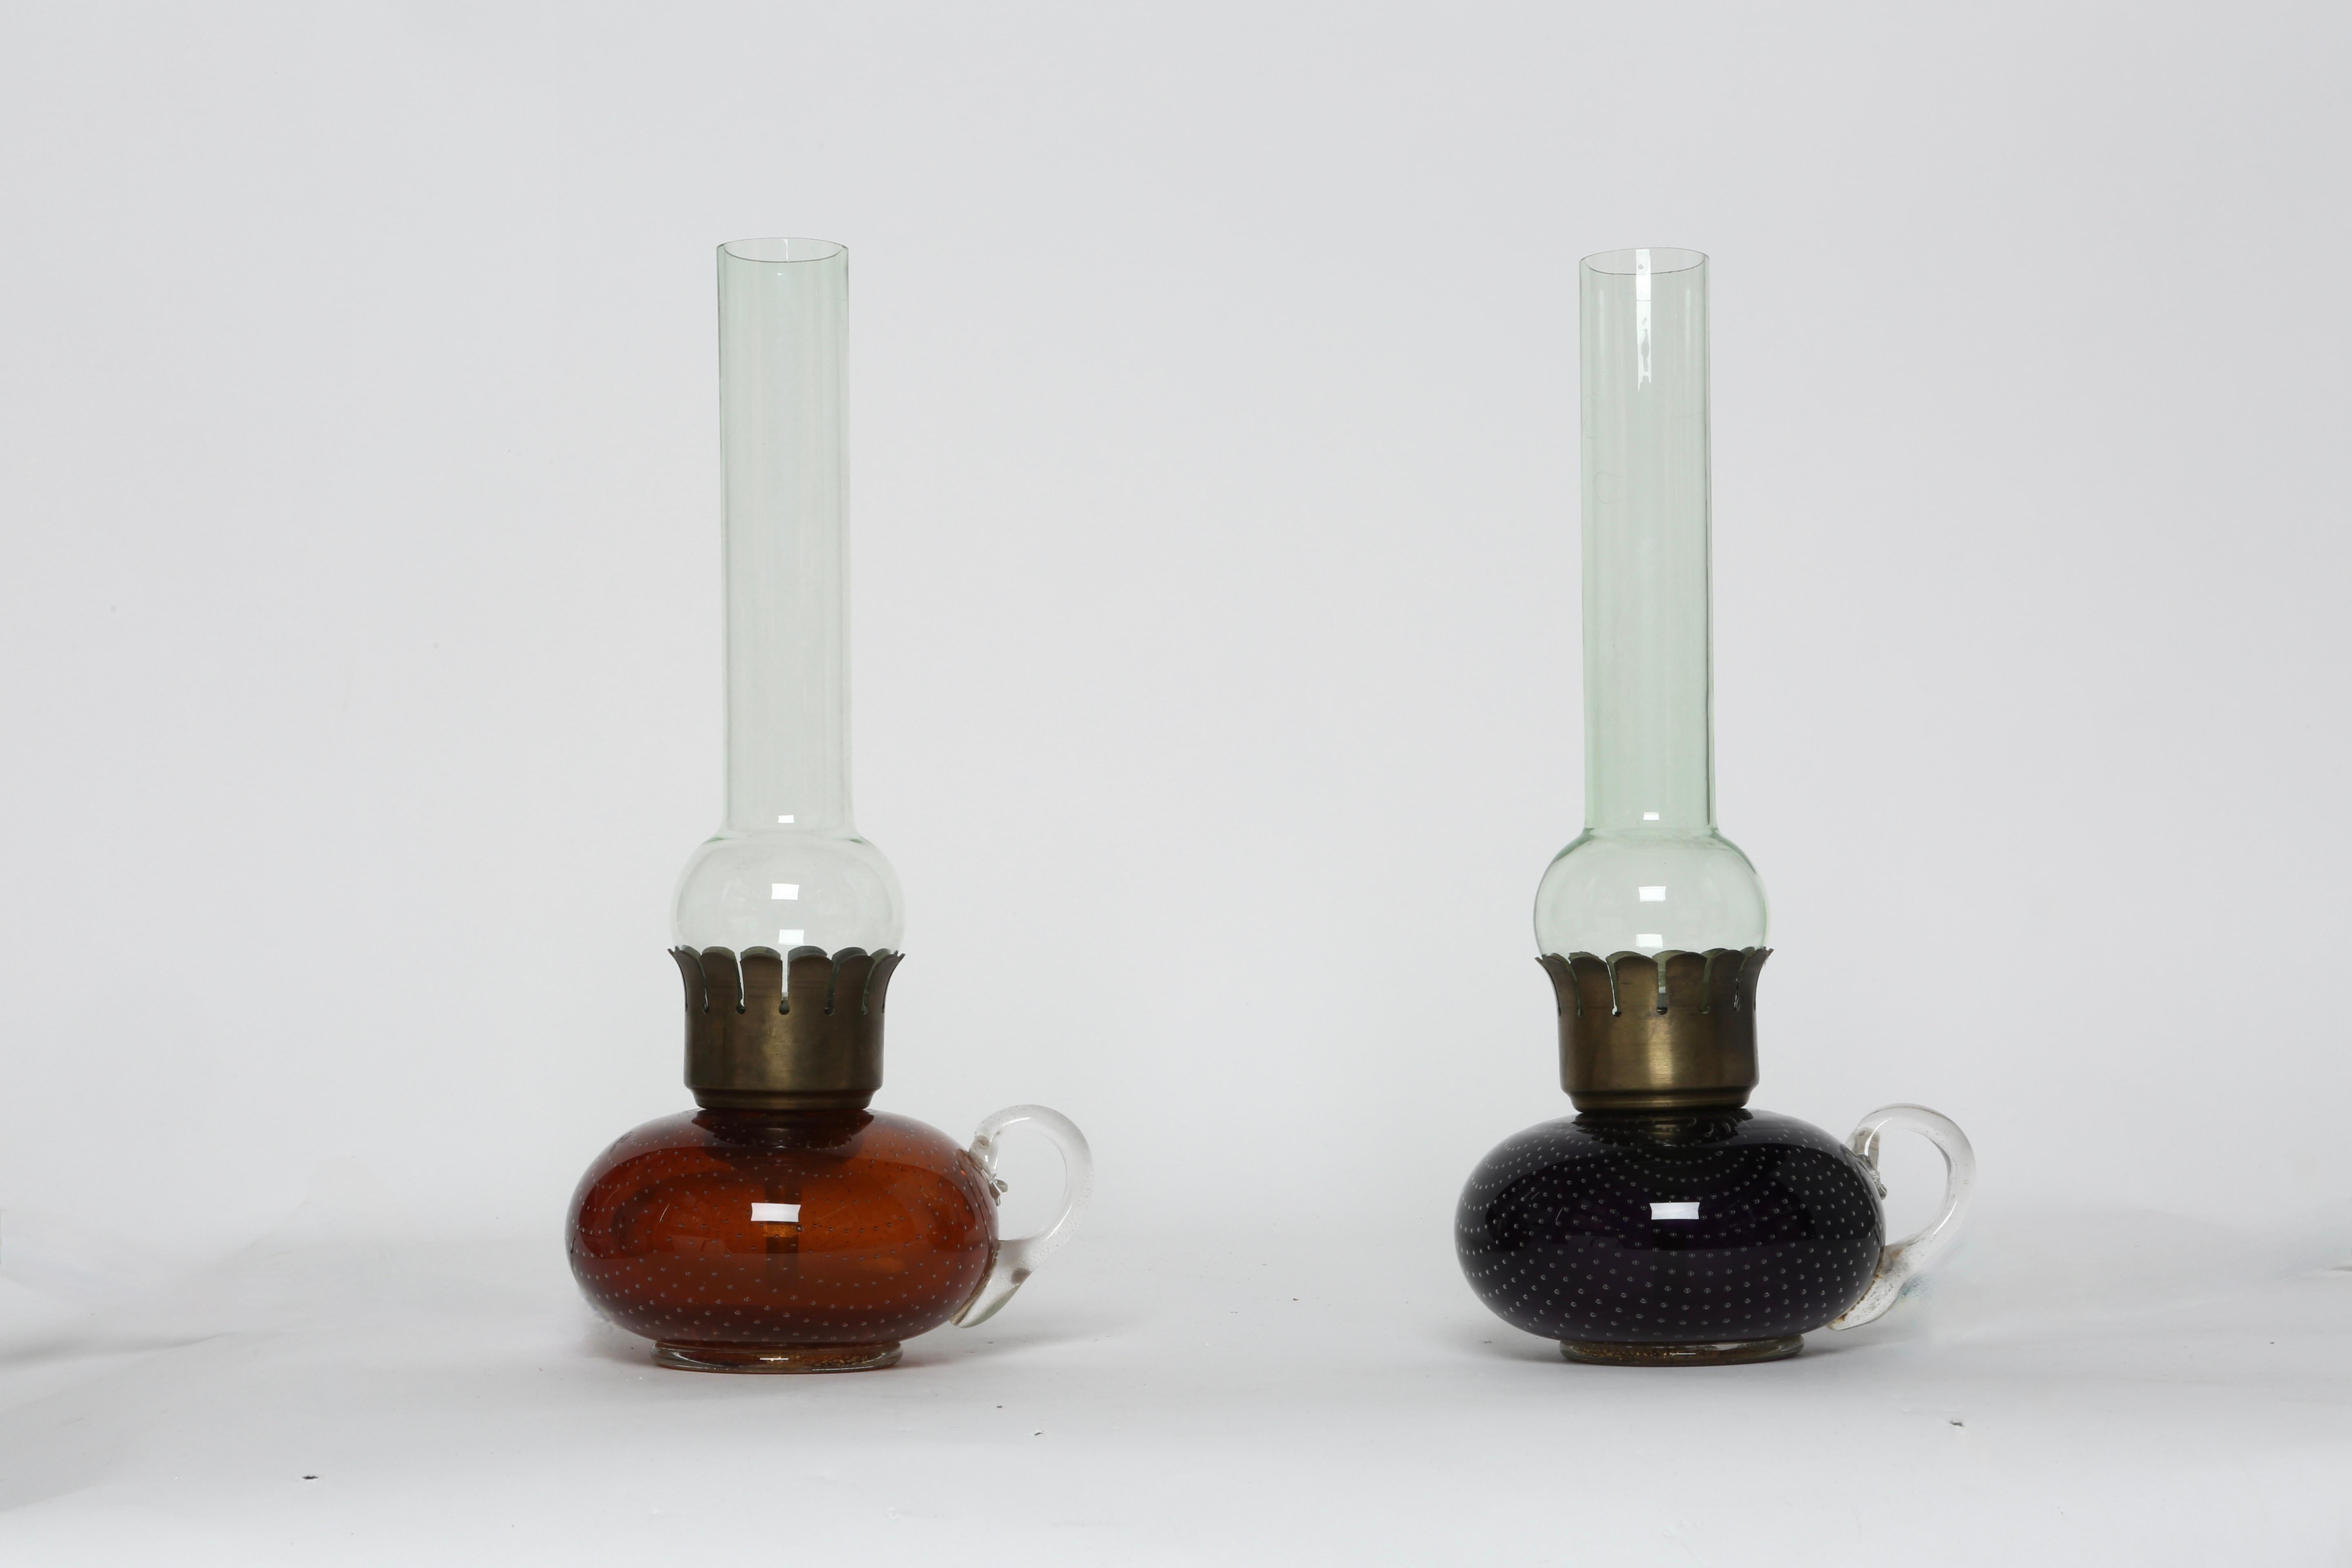 Paire de lampes de table en verre de Murano par Archimede Seguso
Fabriqué en Italie dans les années 1950.
Bullicante verre, verre, laiton.
Une douille candélabre par pièce.
Recâblage américain gratuit sur demande.

Nous sommes fiers de redonner aux